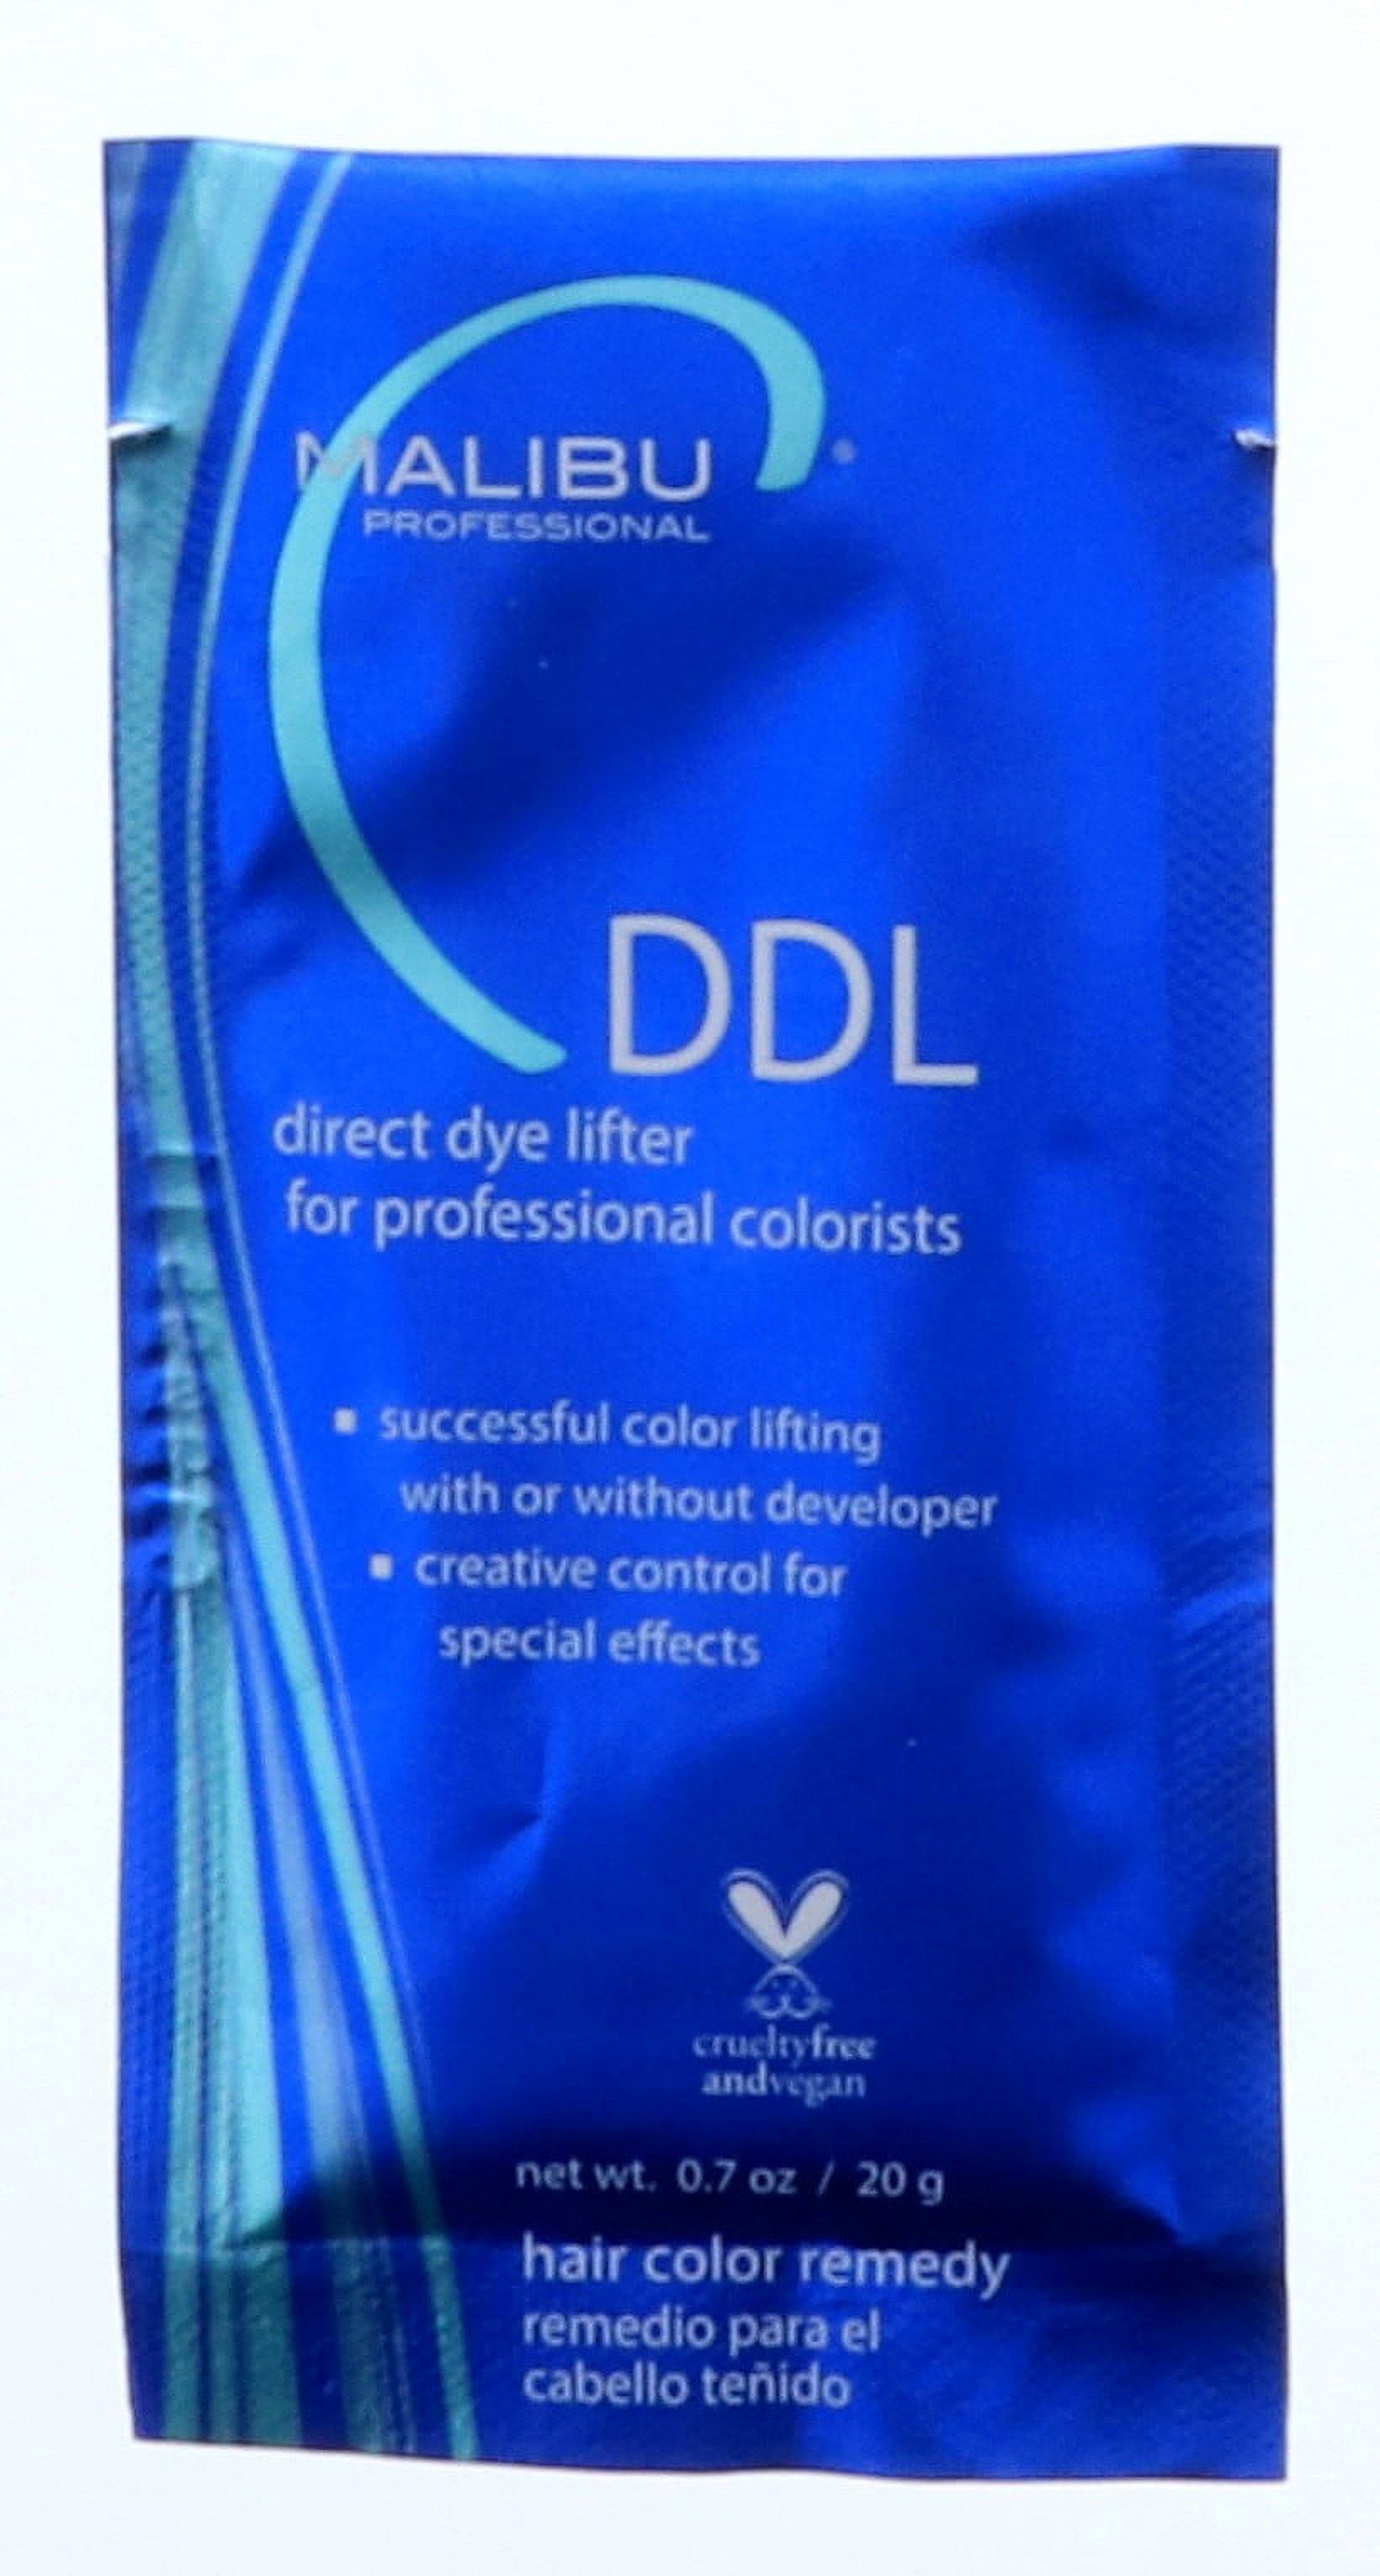 Malibu C DDL Direct Dye Lifter, 1 Piece - image 2 of 3